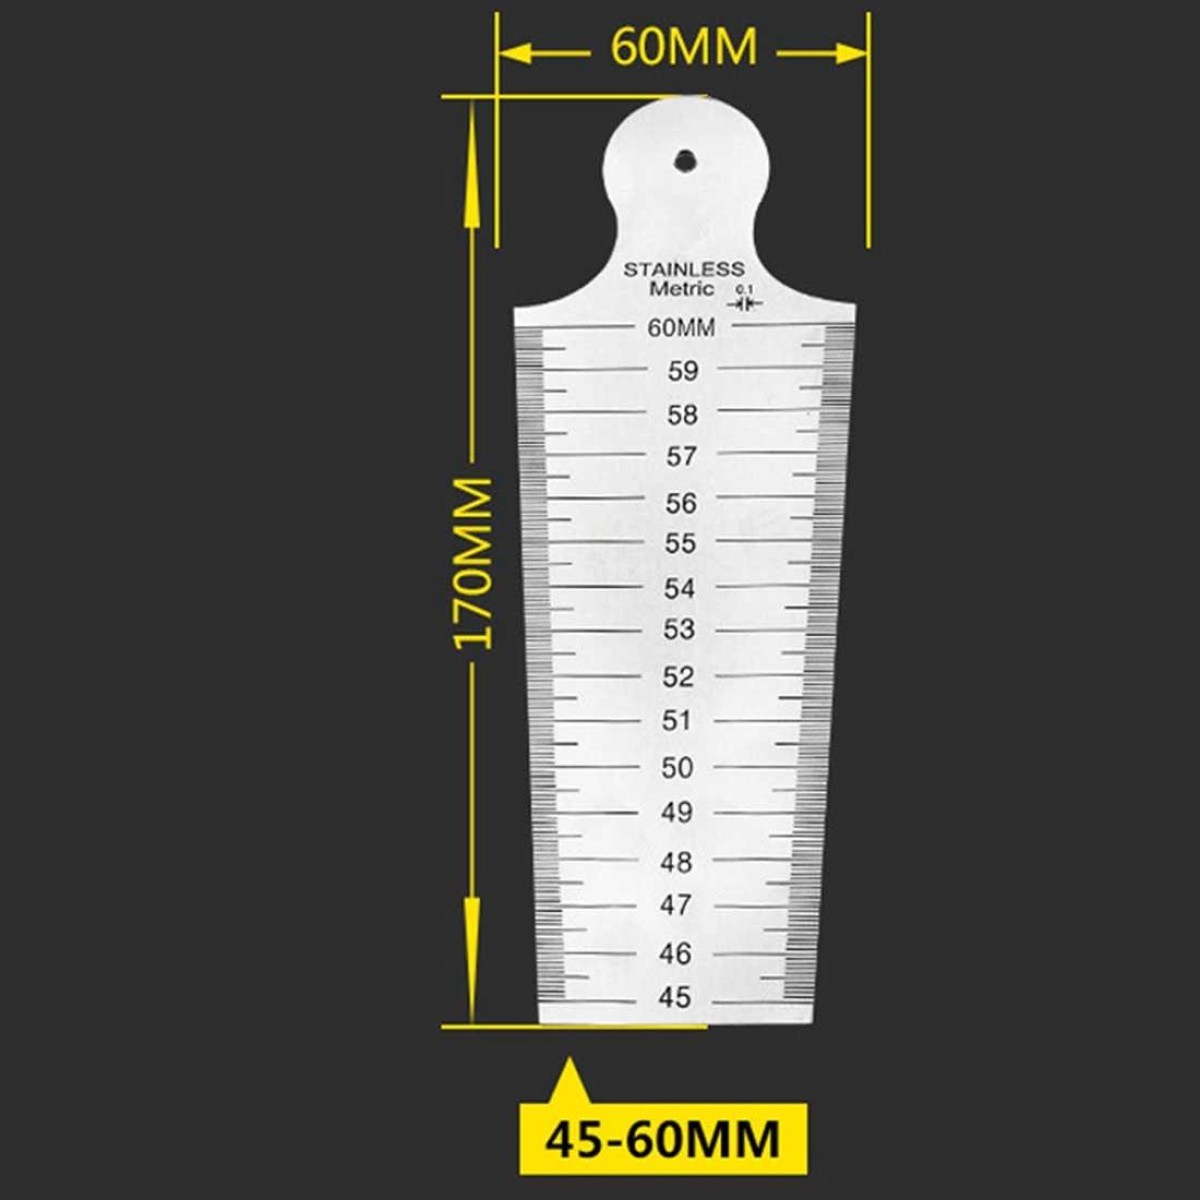 Wedge Feeler Gap 45-60mm Stainless Steel Ruler Inspection Taper Gauge Metric Imperial Measure Tool